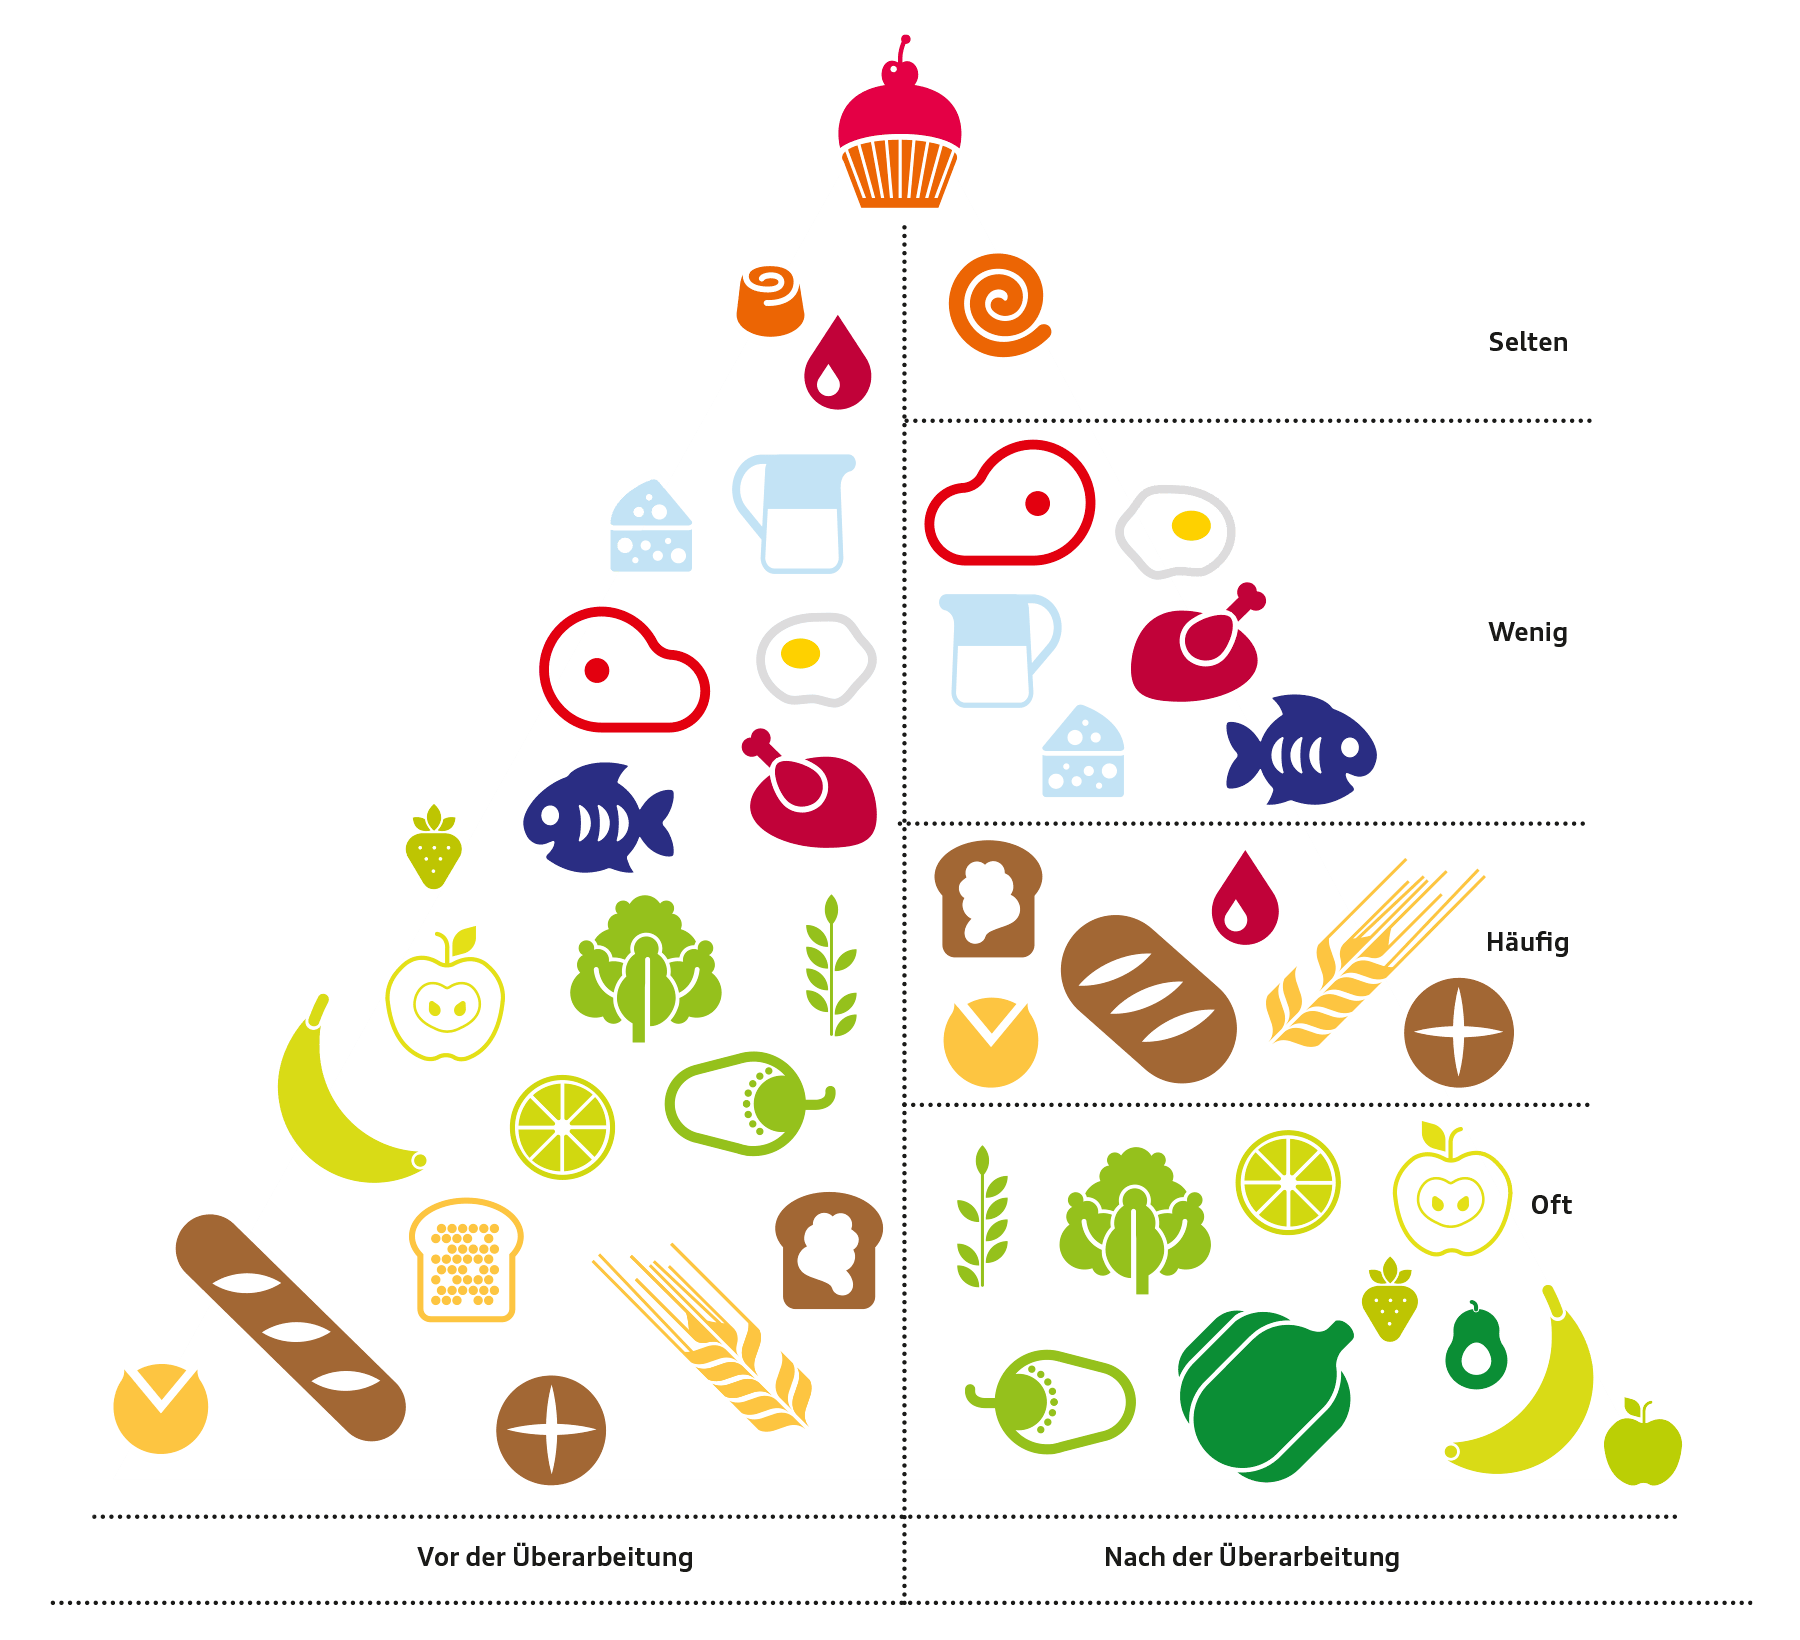 Ernährungspyramide vor und nach der Überarbeitung der DGE.